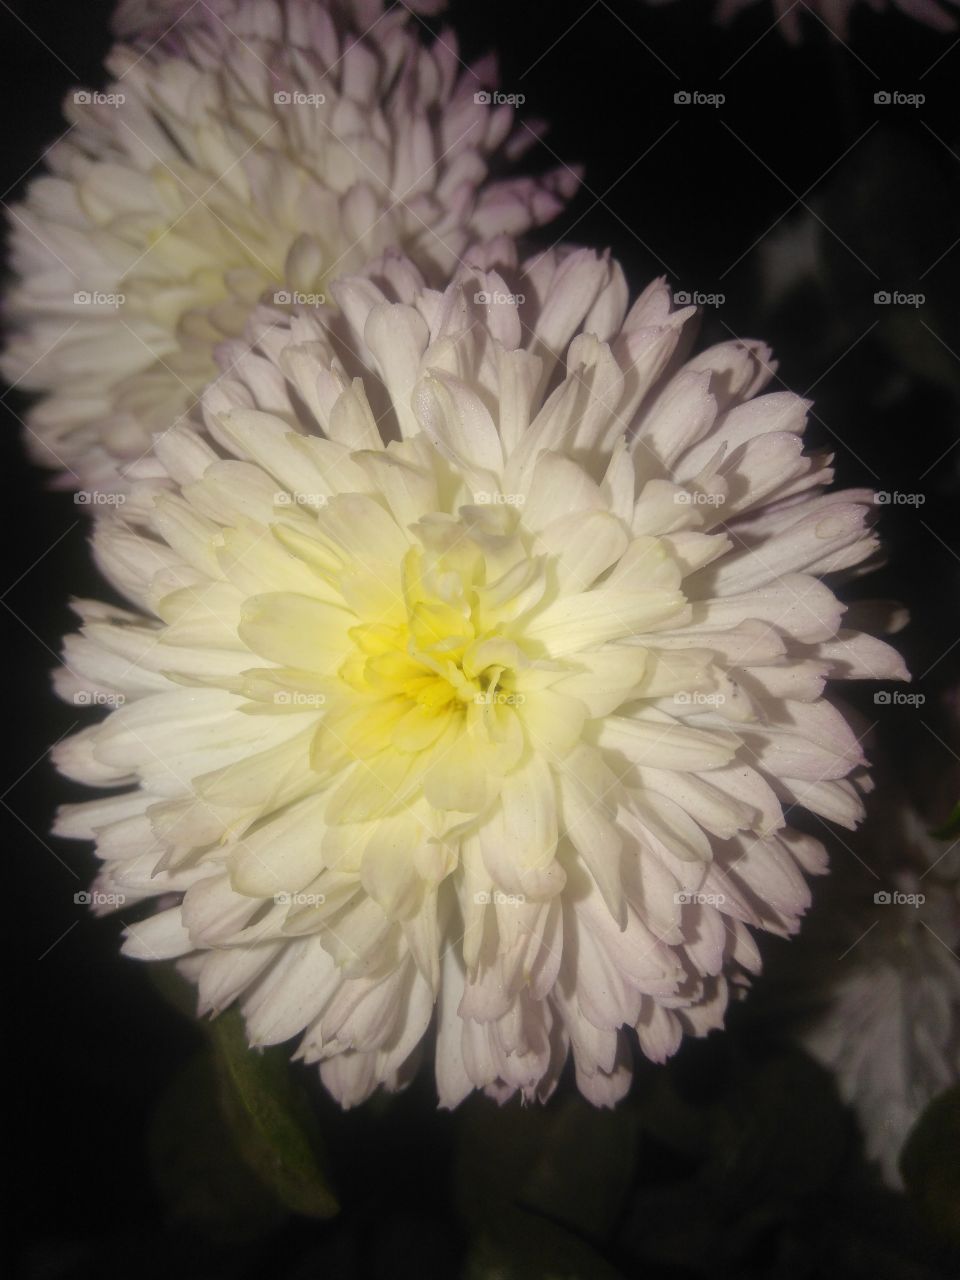 White chrysanthemum
white Flowers